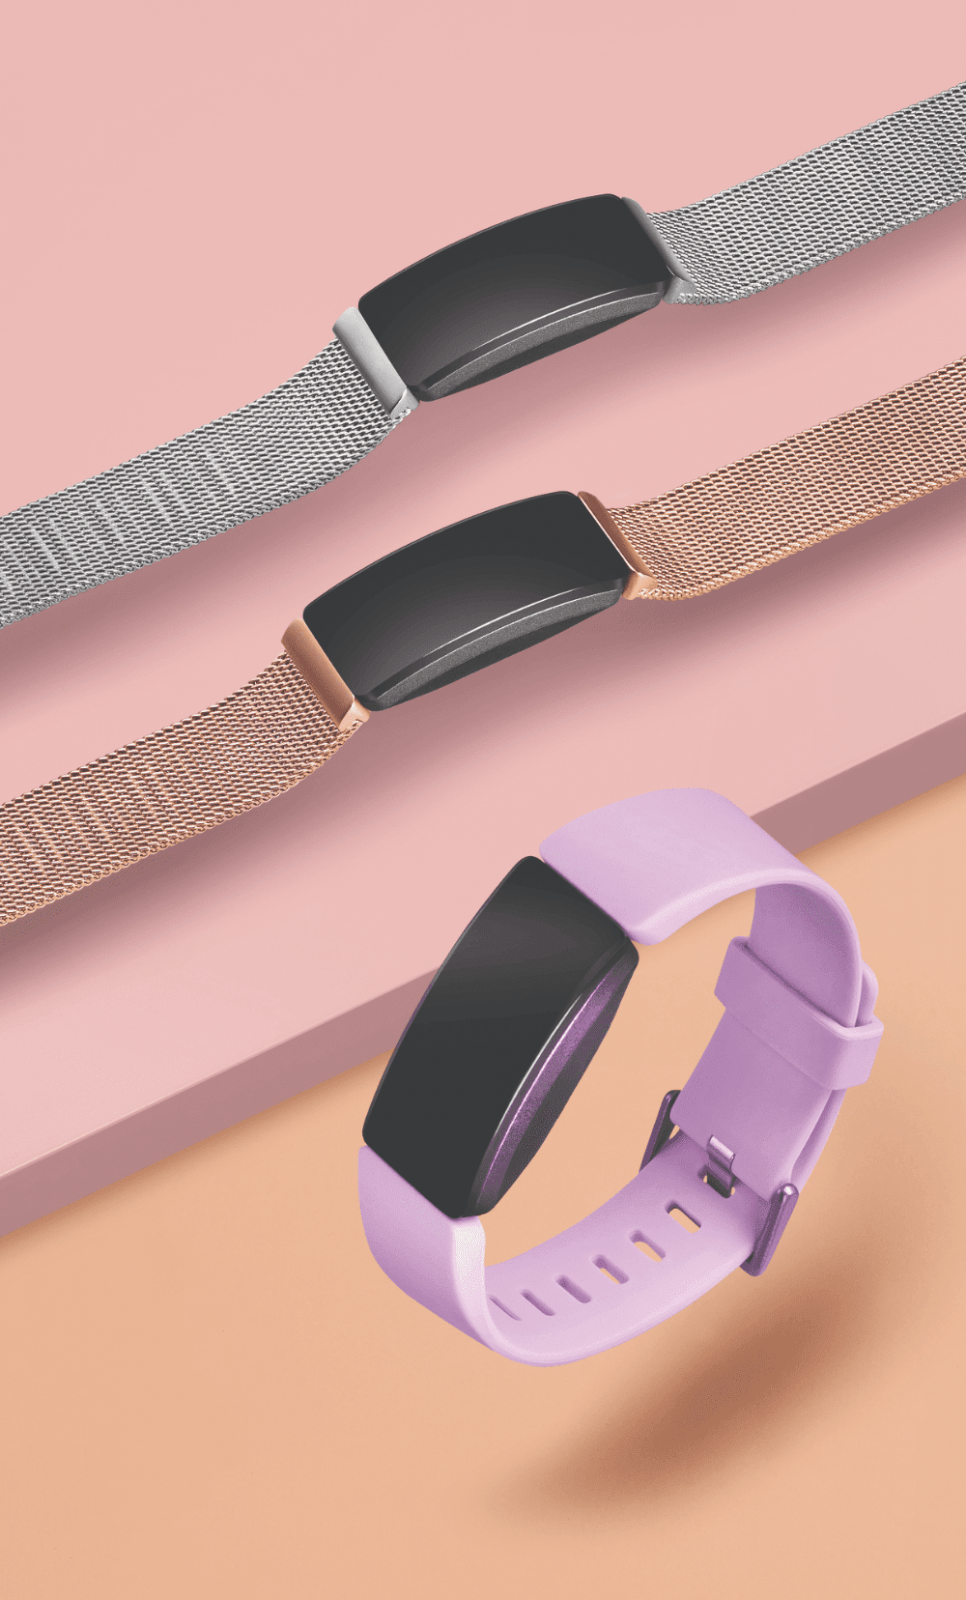 Недорогие новинки Fitbit. Умные часы Versa Lite, браслеты Inspire и фитнес-трекер для детей Ace 2 (fitibit inspire hr 4)